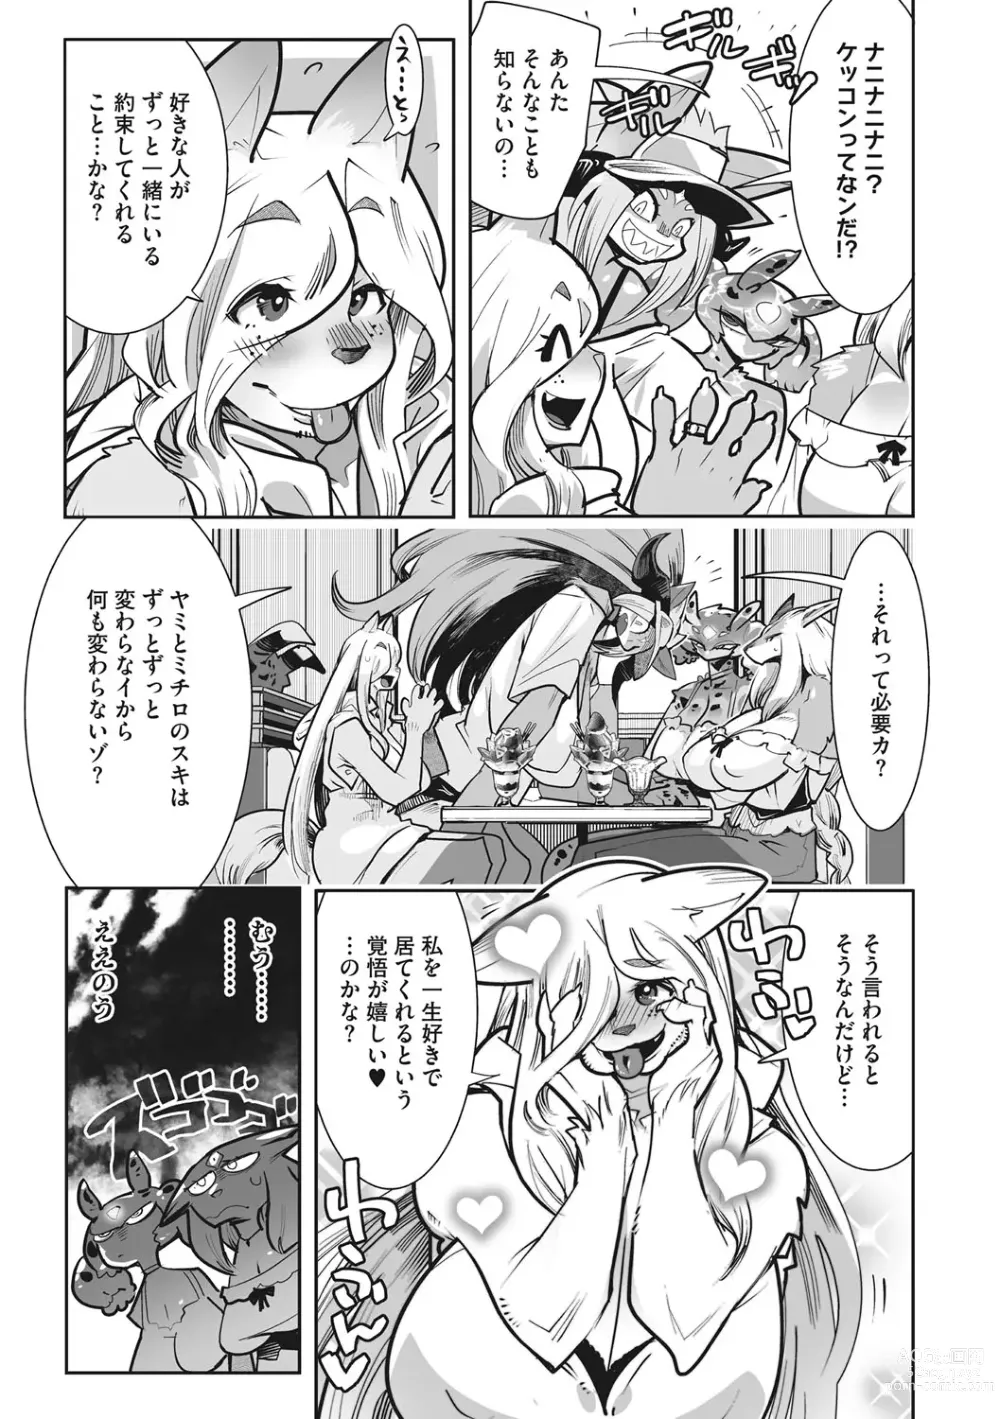 Page 228 of manga Kemono to Koishite Nani ga Warui!